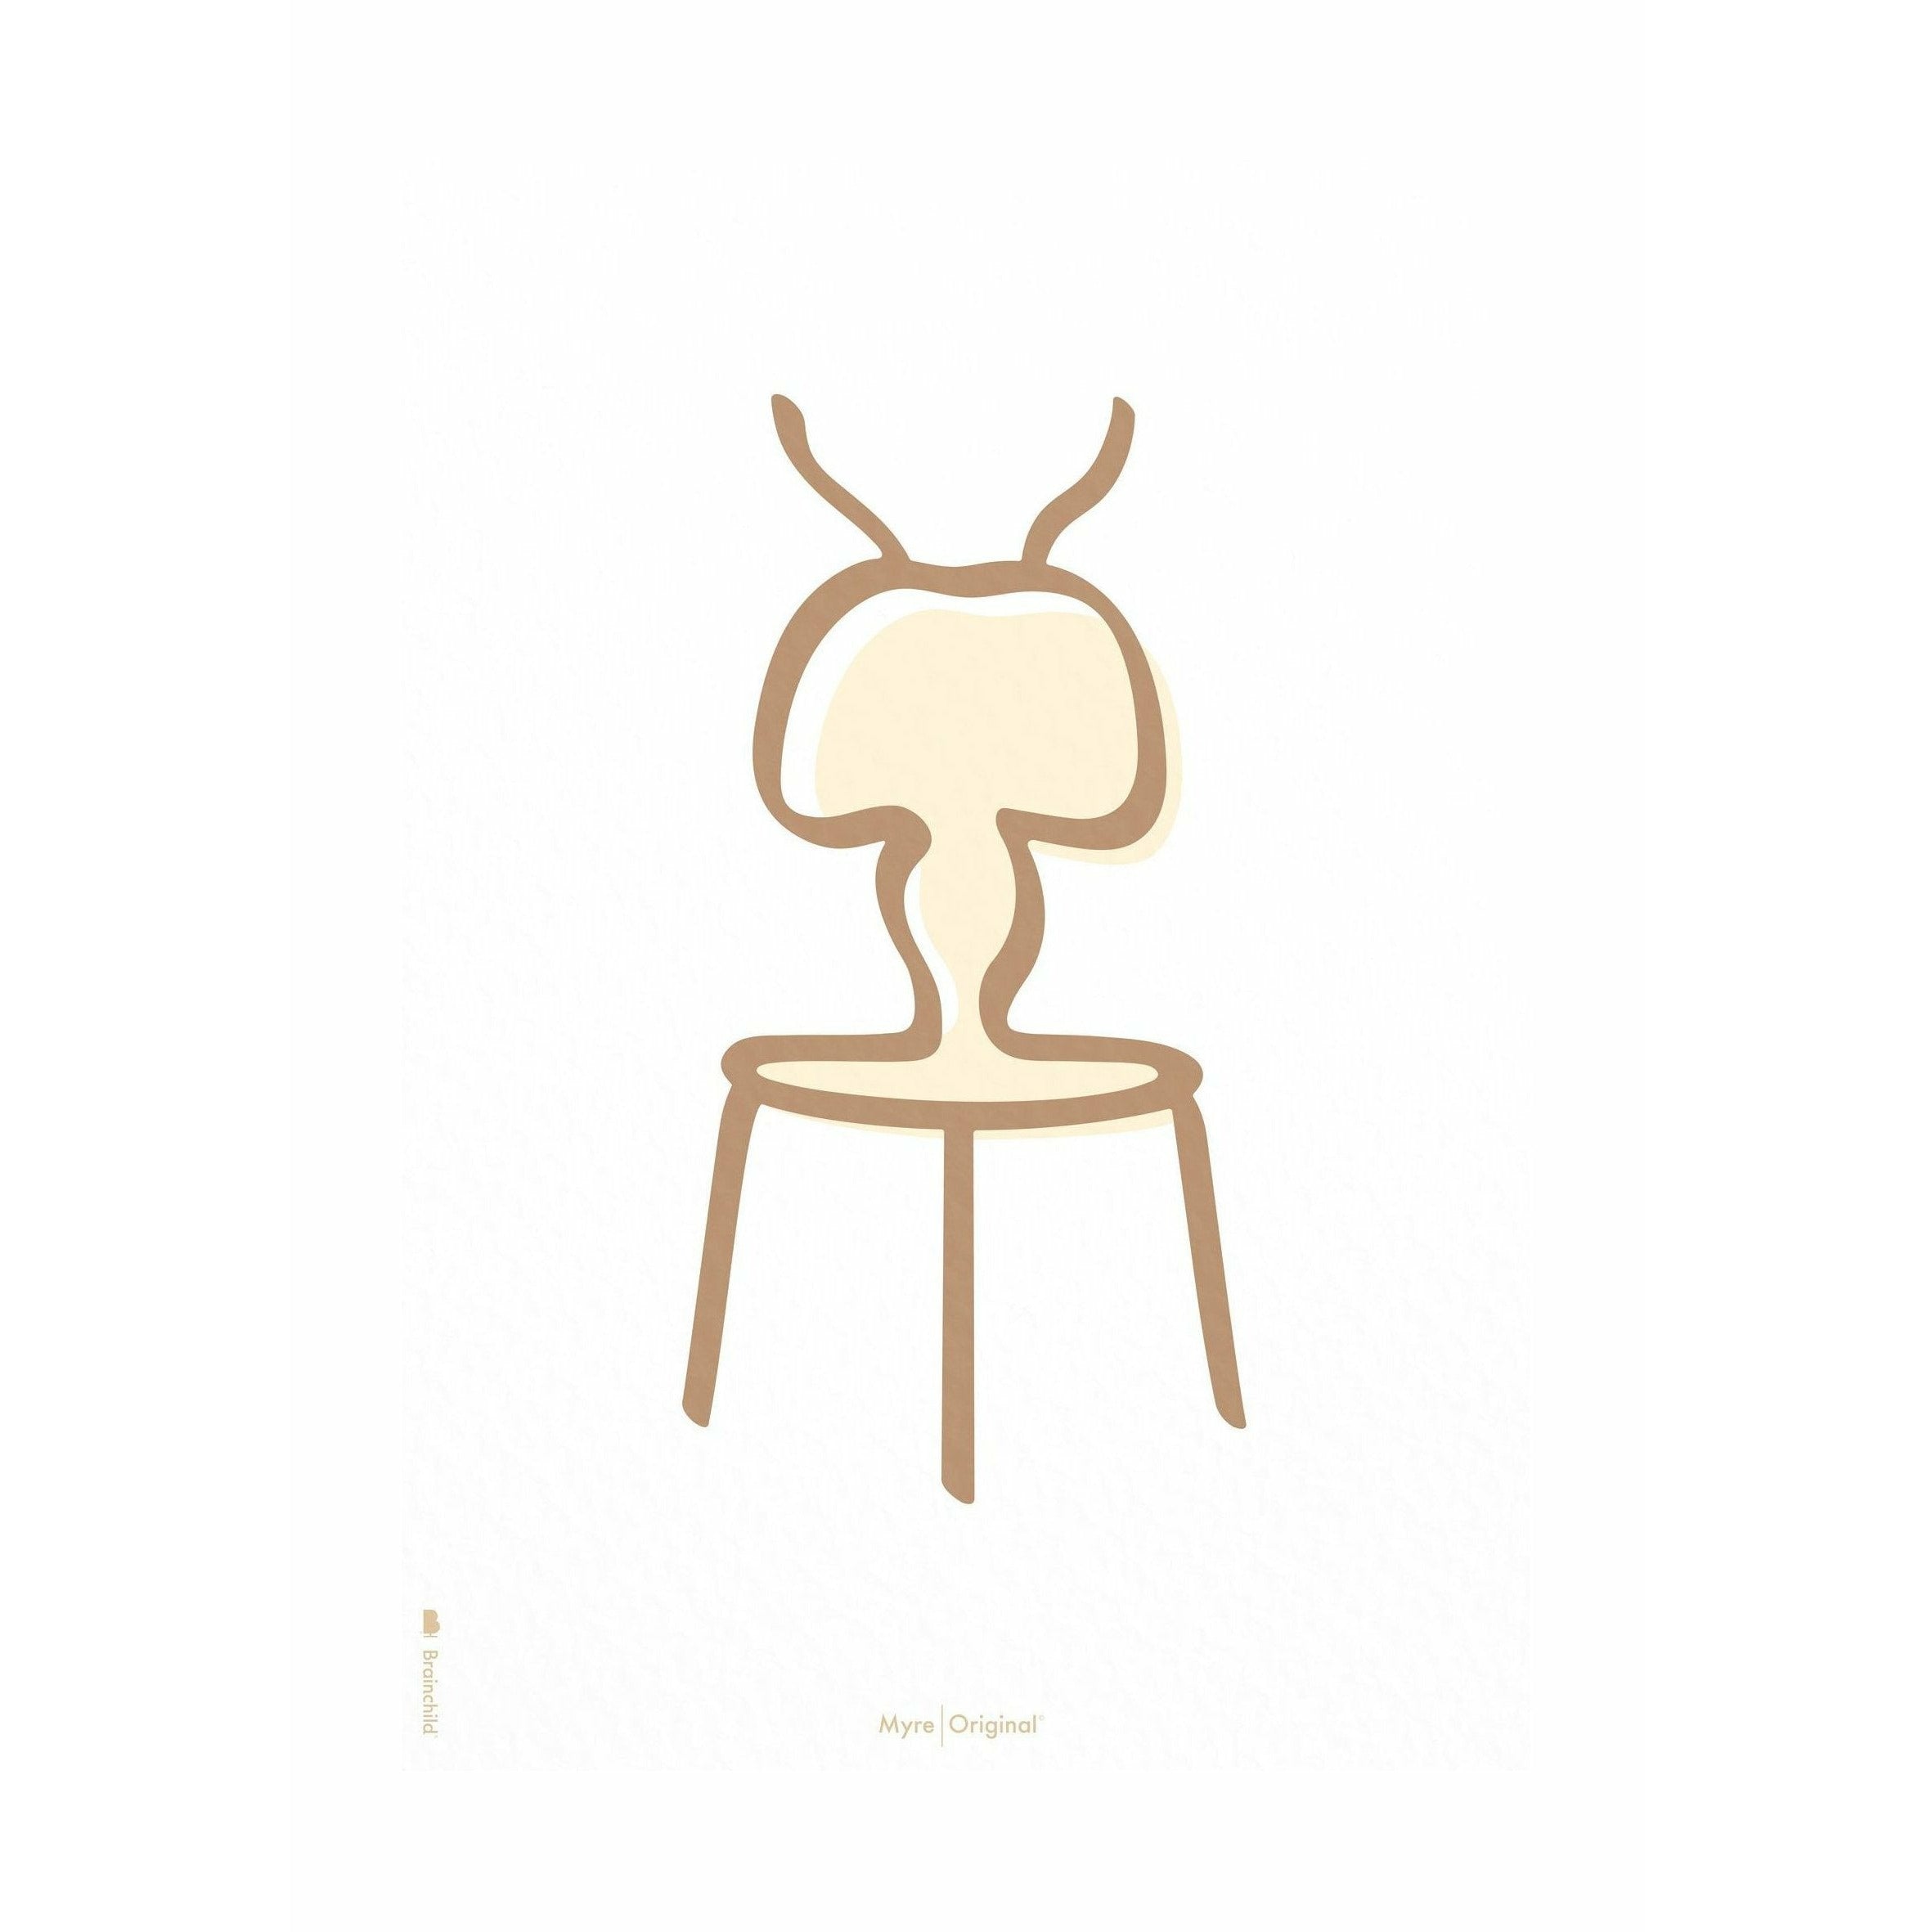 Pomysły plakat linii mrówek bez ramy 70 x100 cm, białe tło